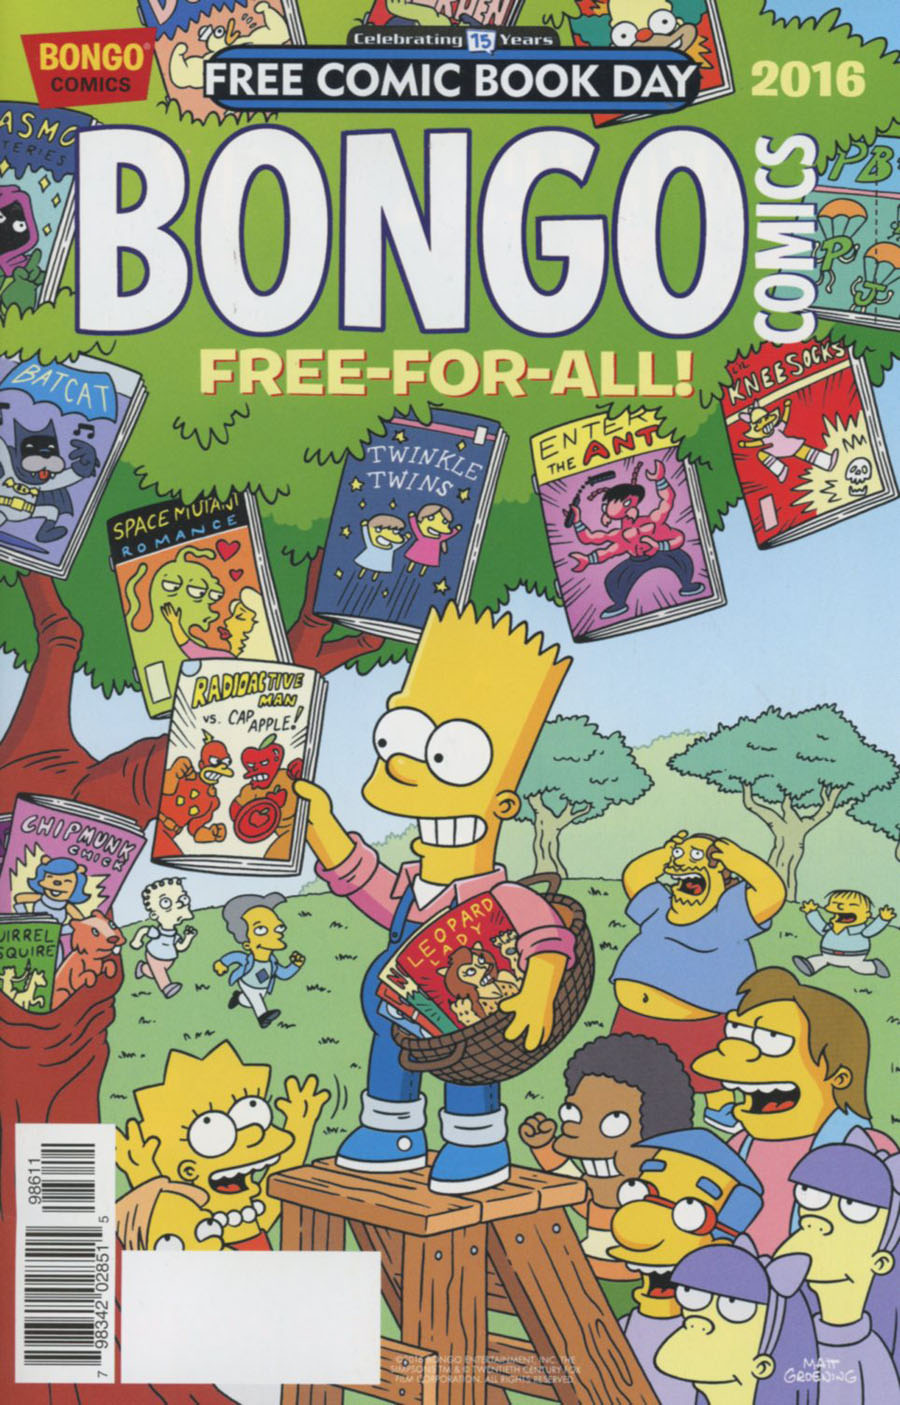 Bongo Comics Free-For-All FCBD 2016